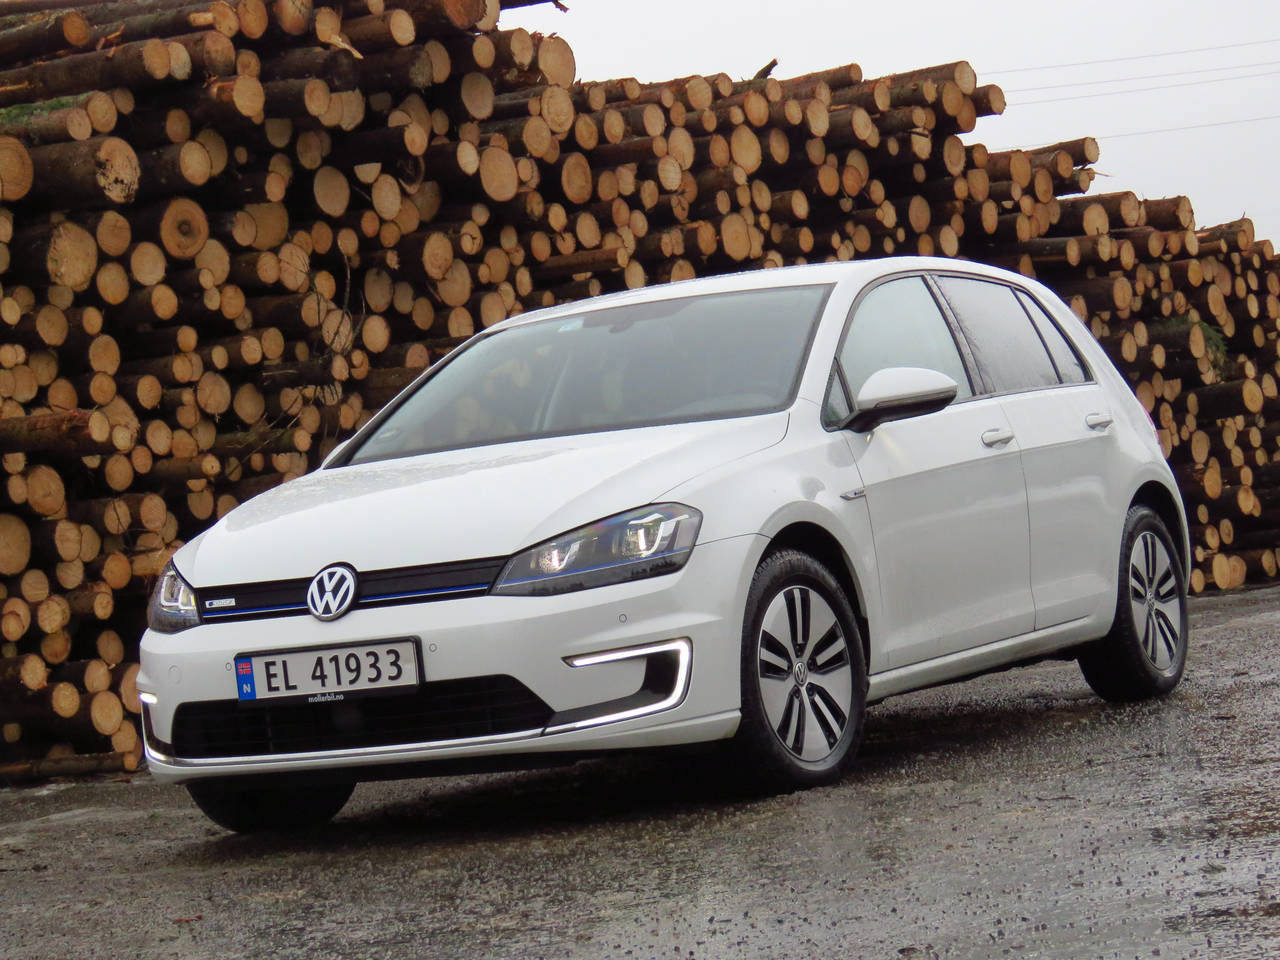 SEKSSIFRET: Nylig rundet Volkswagen e-Golf 100.000 leveringer siden introduksjonen i 2014. FOTO: Jan Harry Svendsen / NTB scanpix